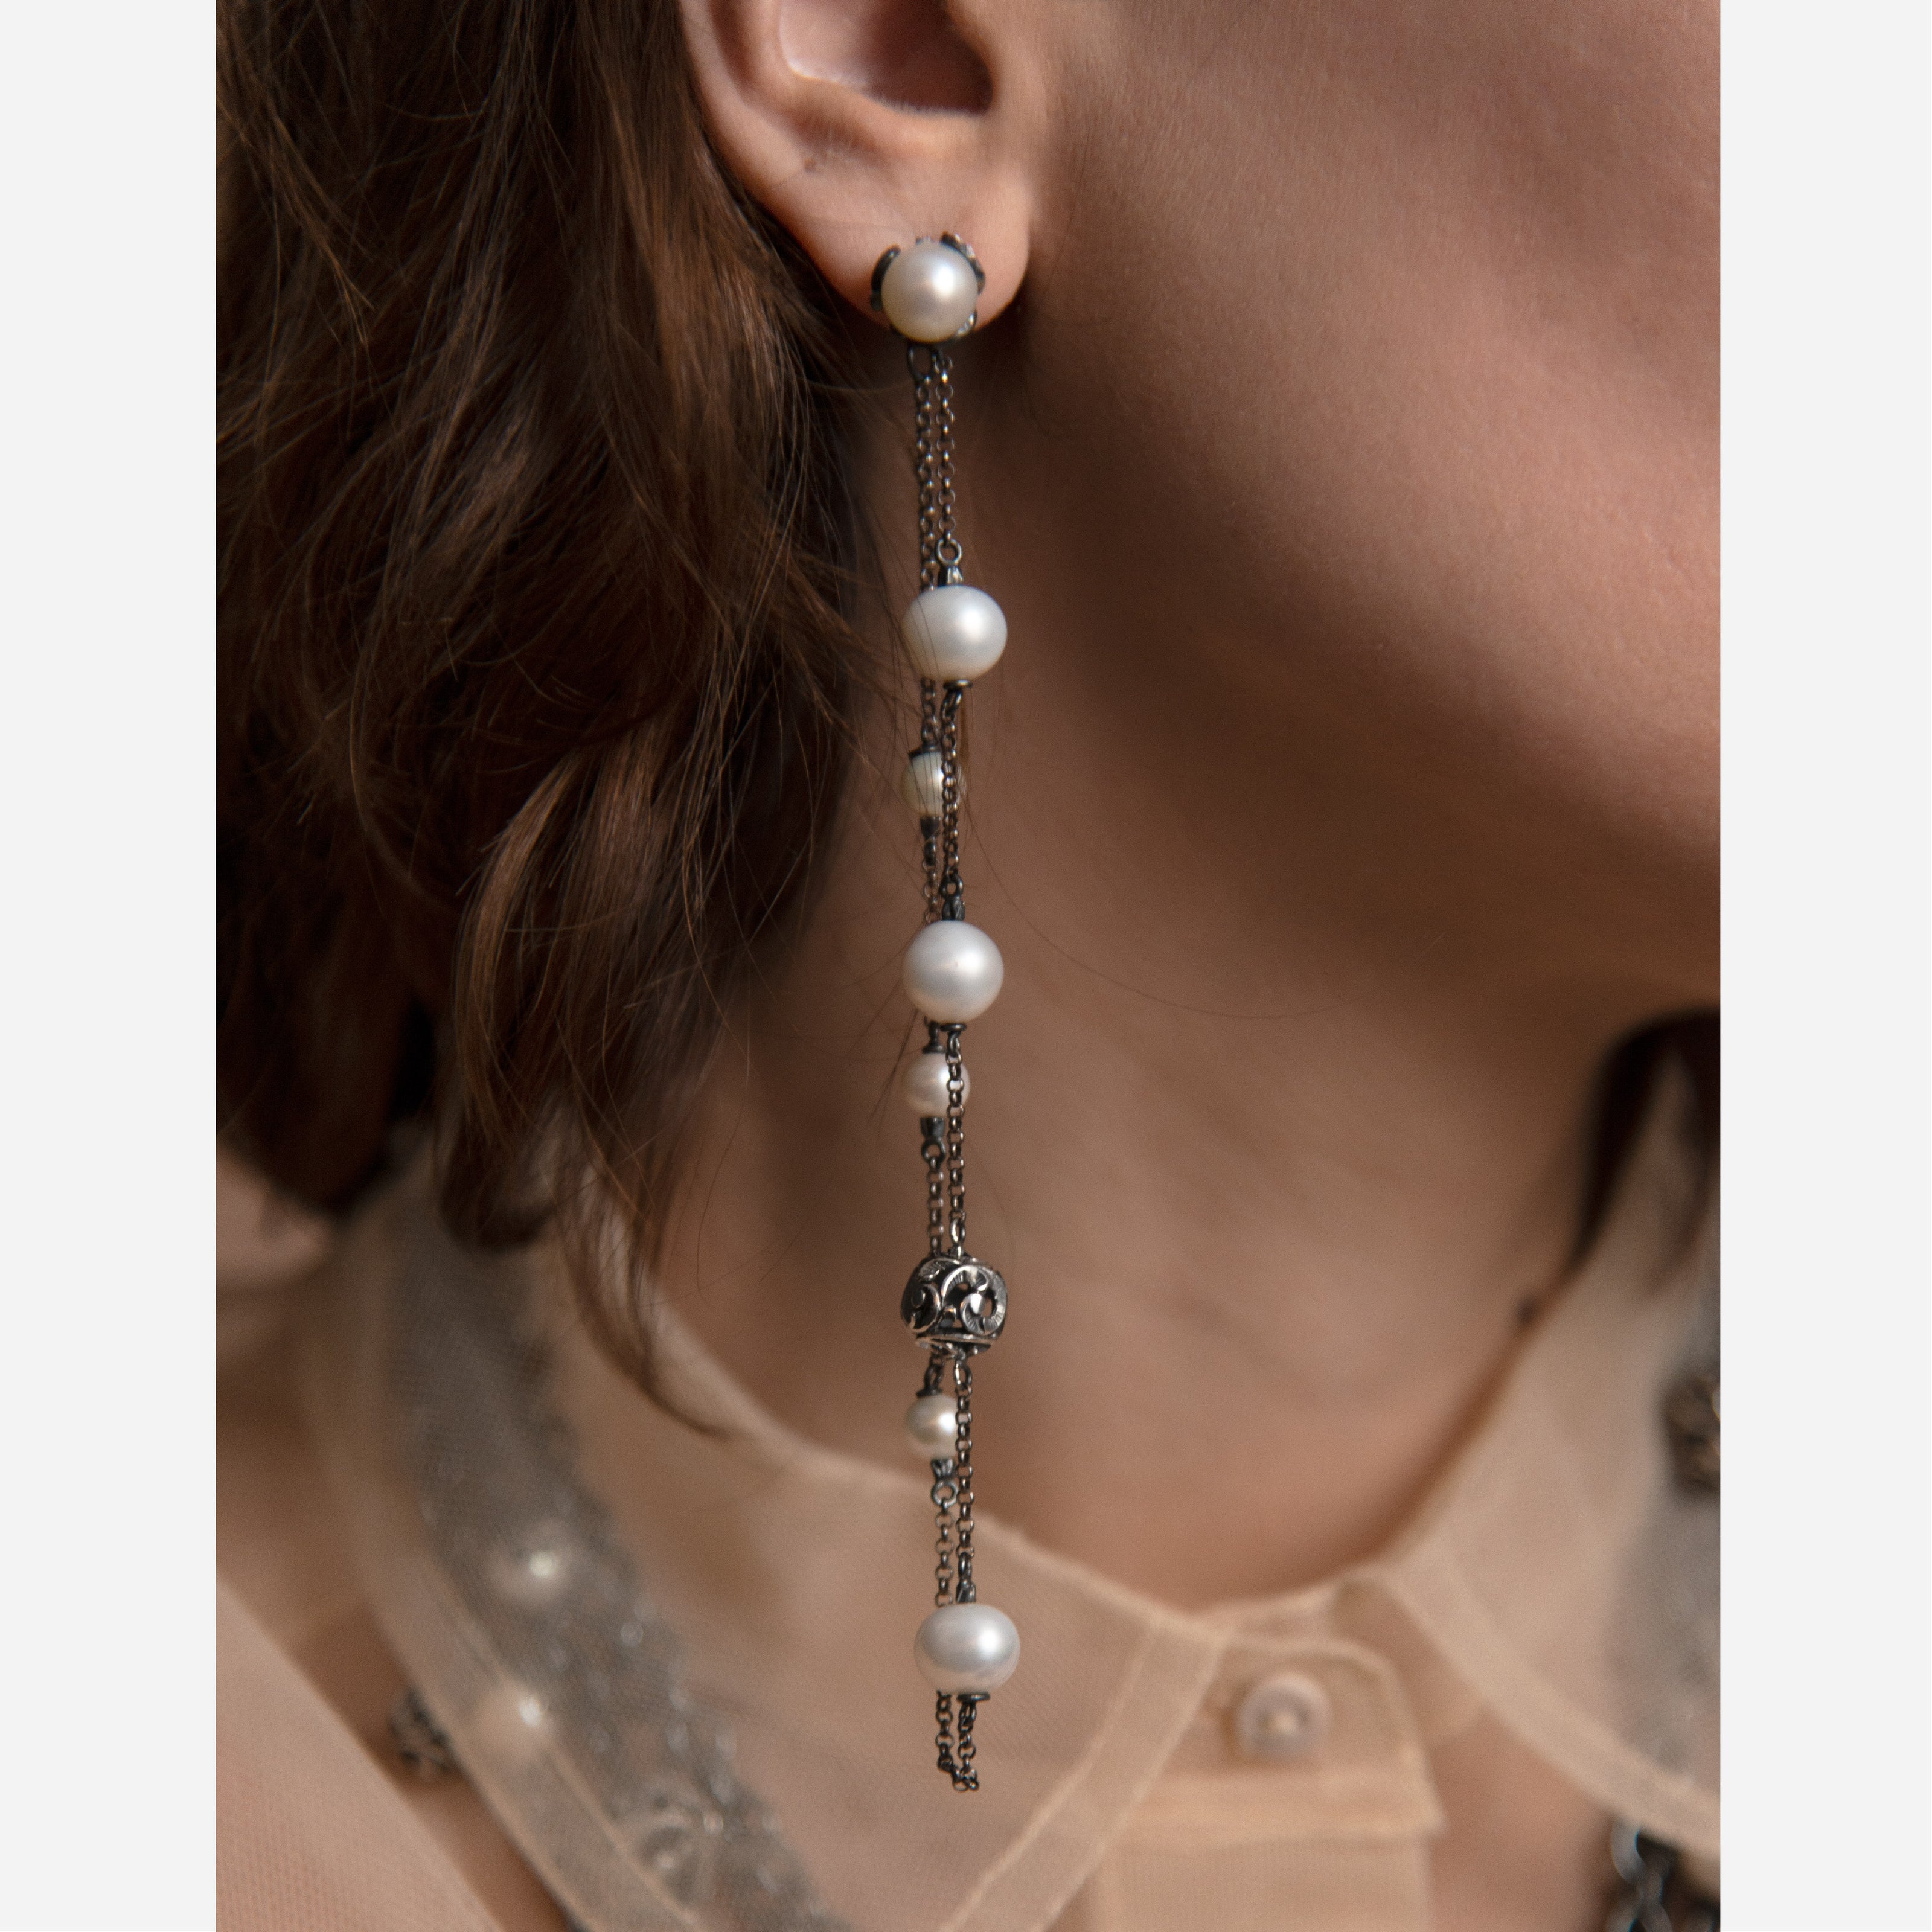 Orecchini Pura con perle naturali e sfera in argento intagliata